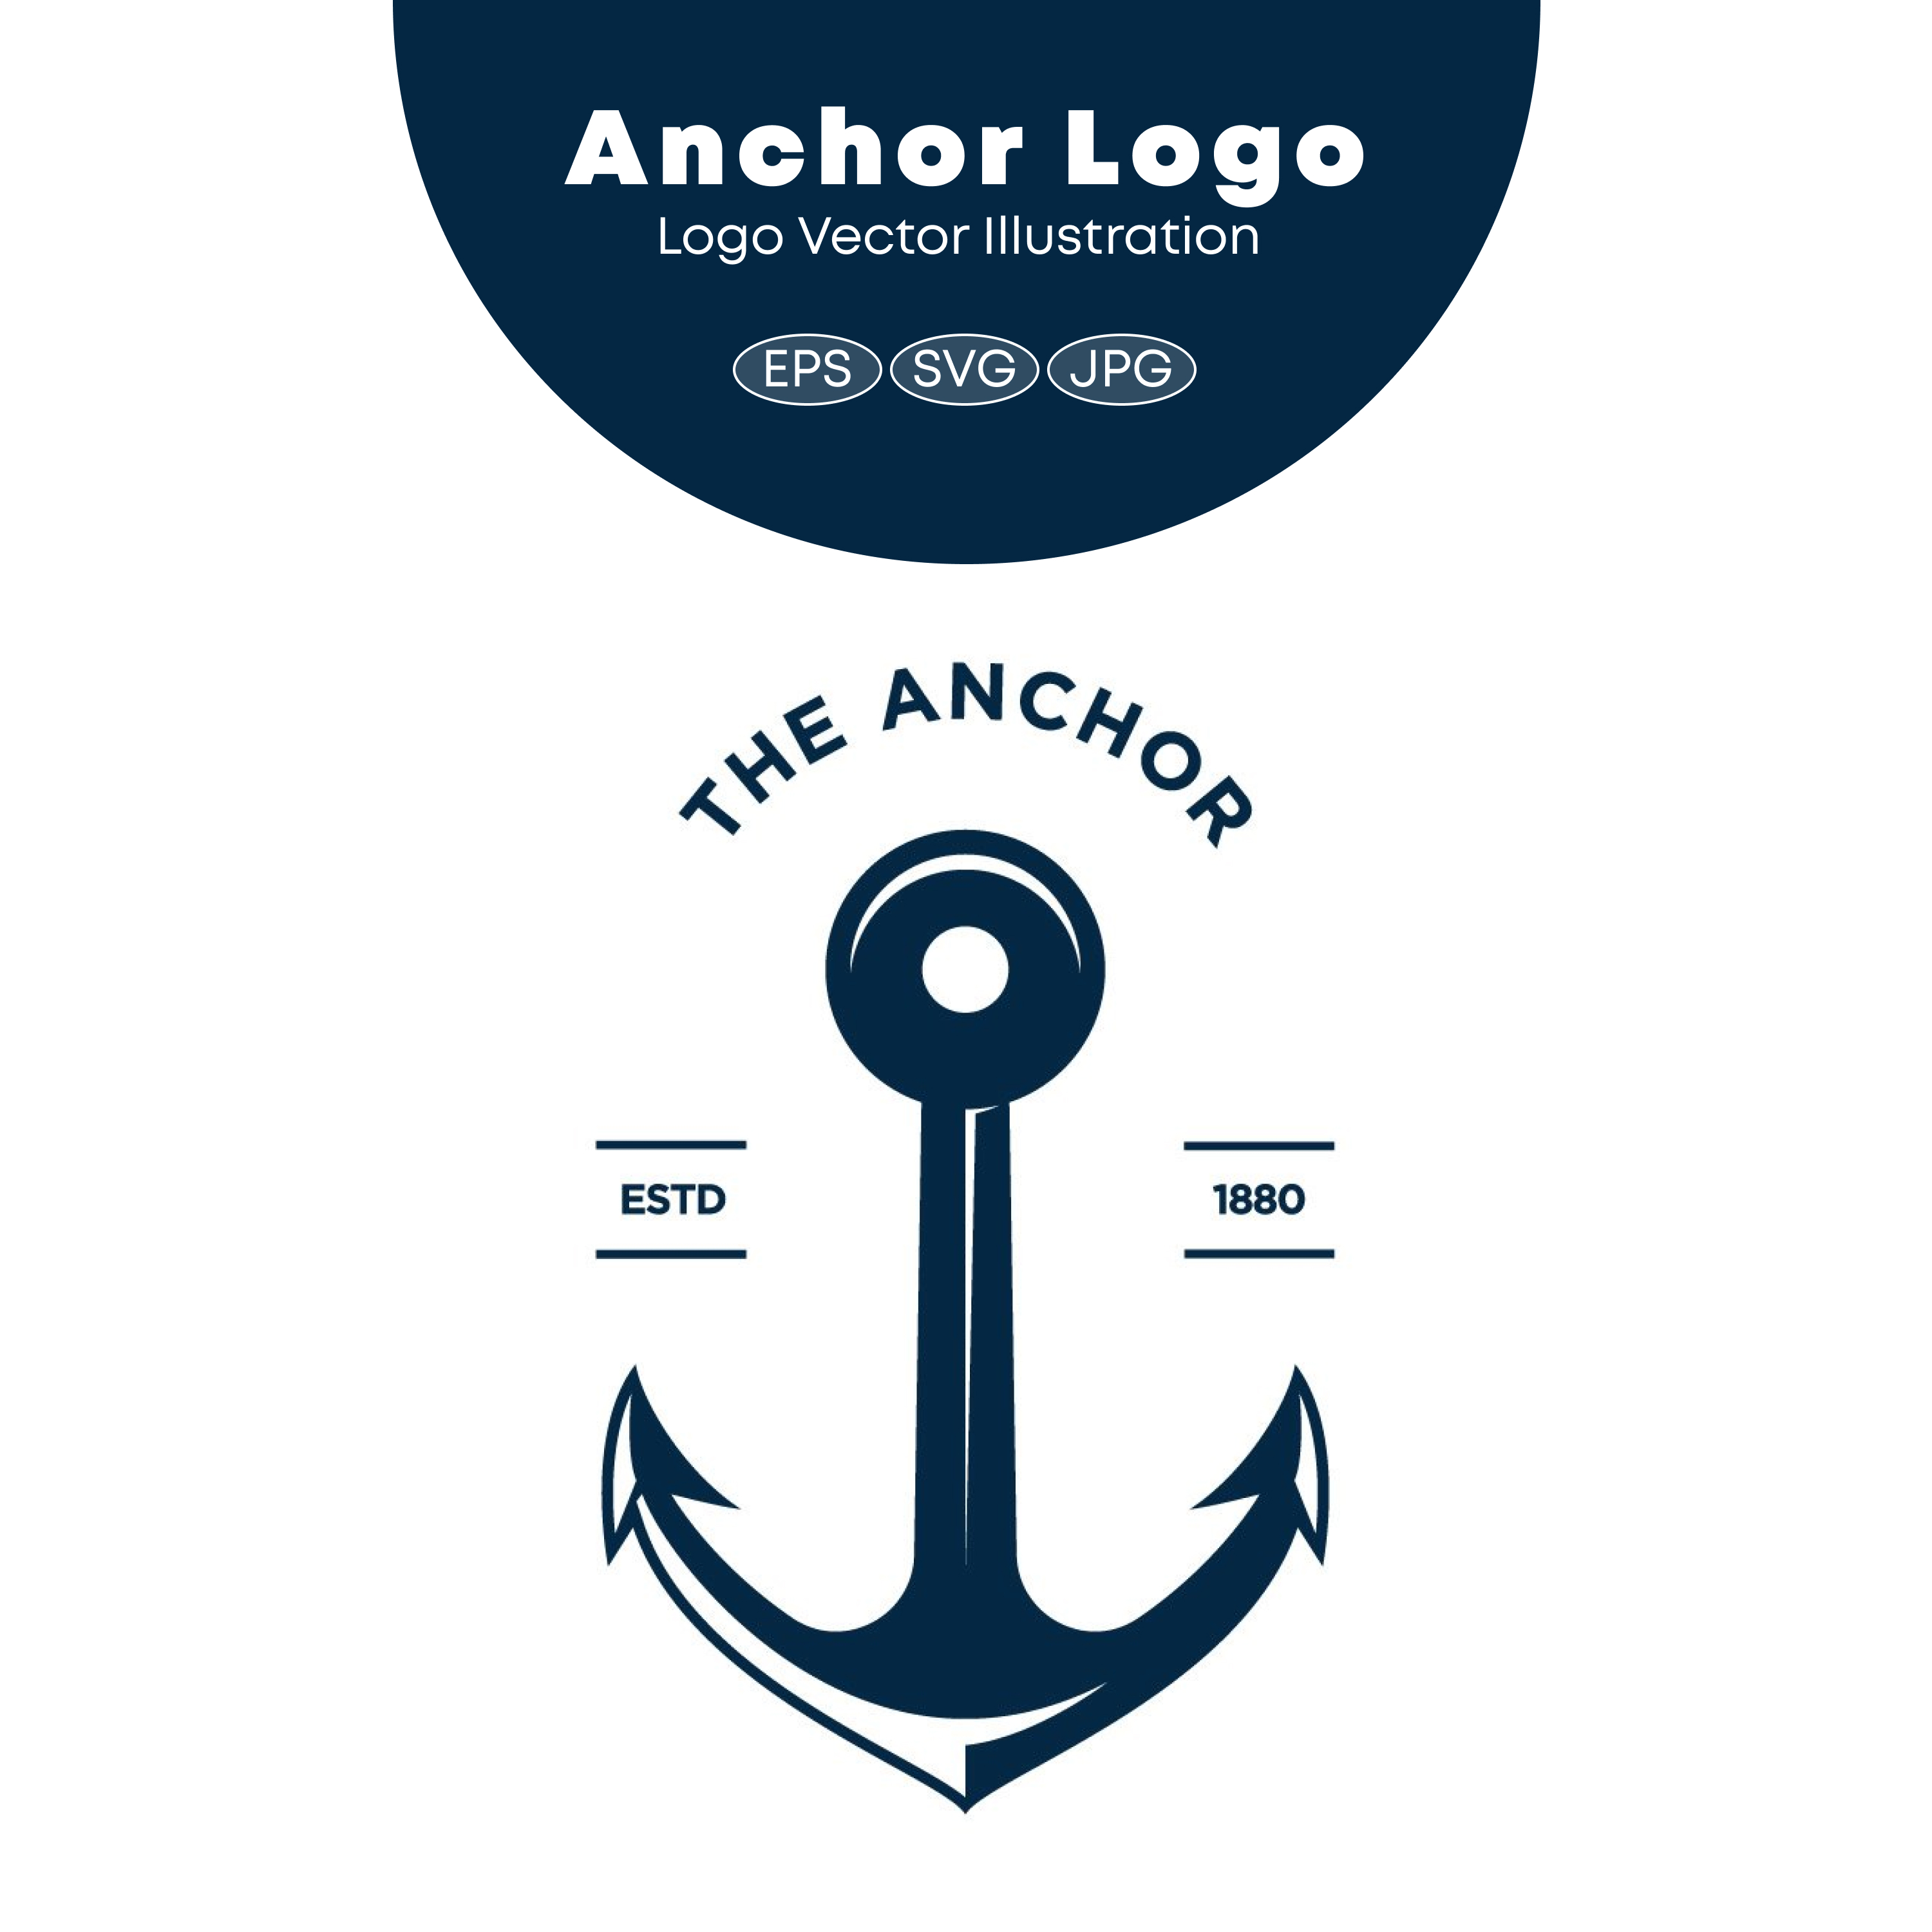 Anchor Logo cover.